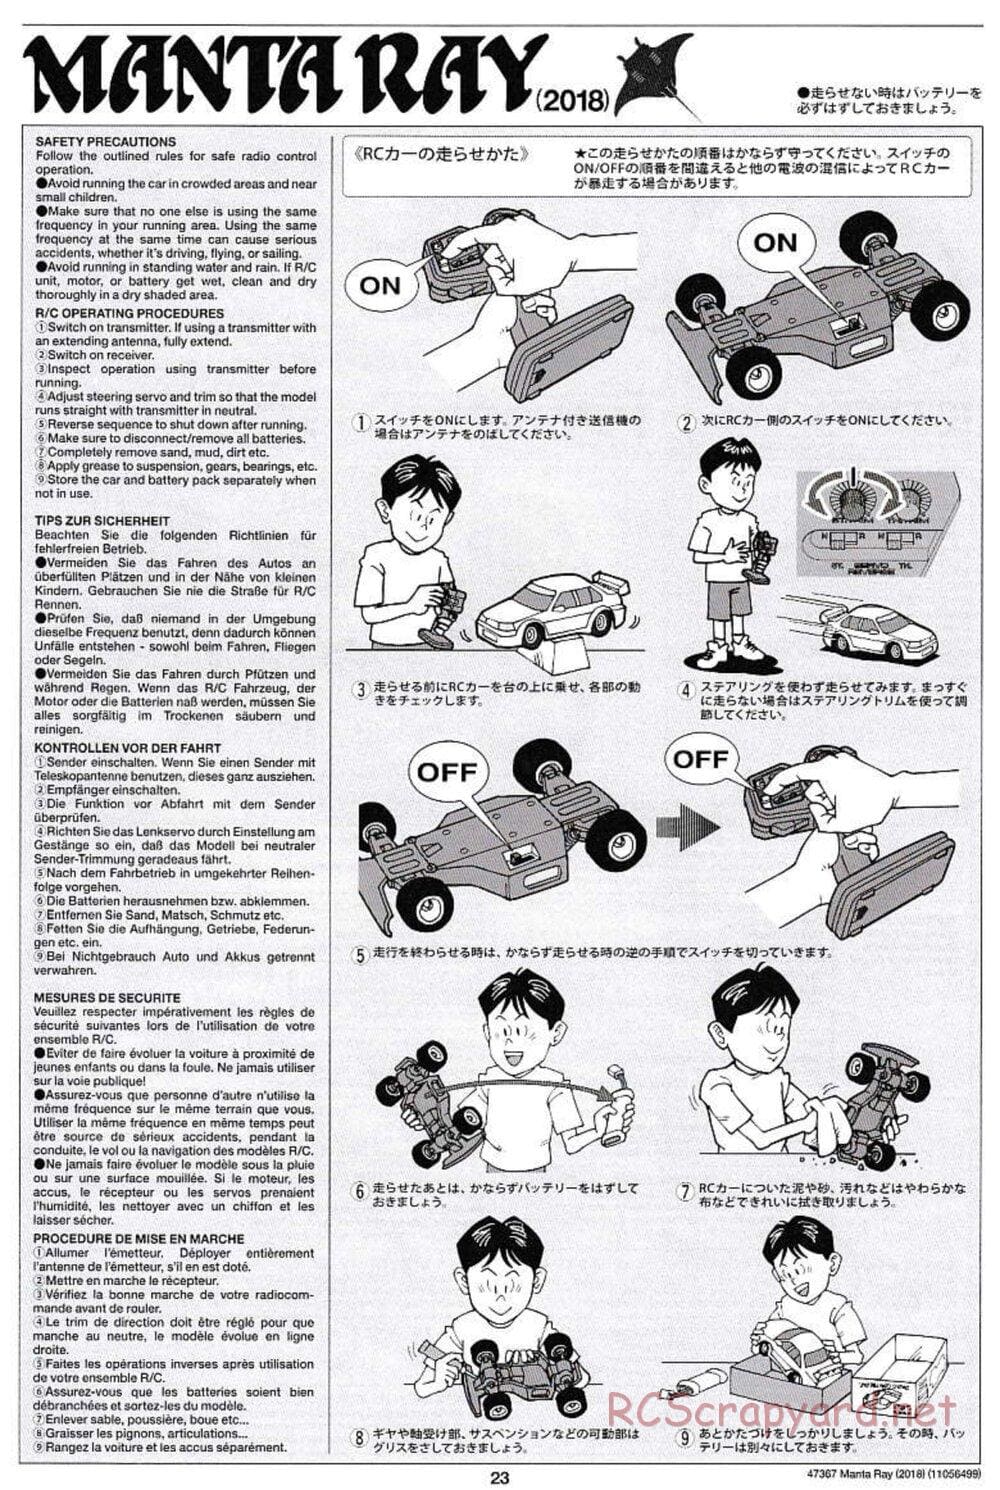 Tamiya - Manta Ray 2018 - DF-01 Chassis - Manual - Page 23